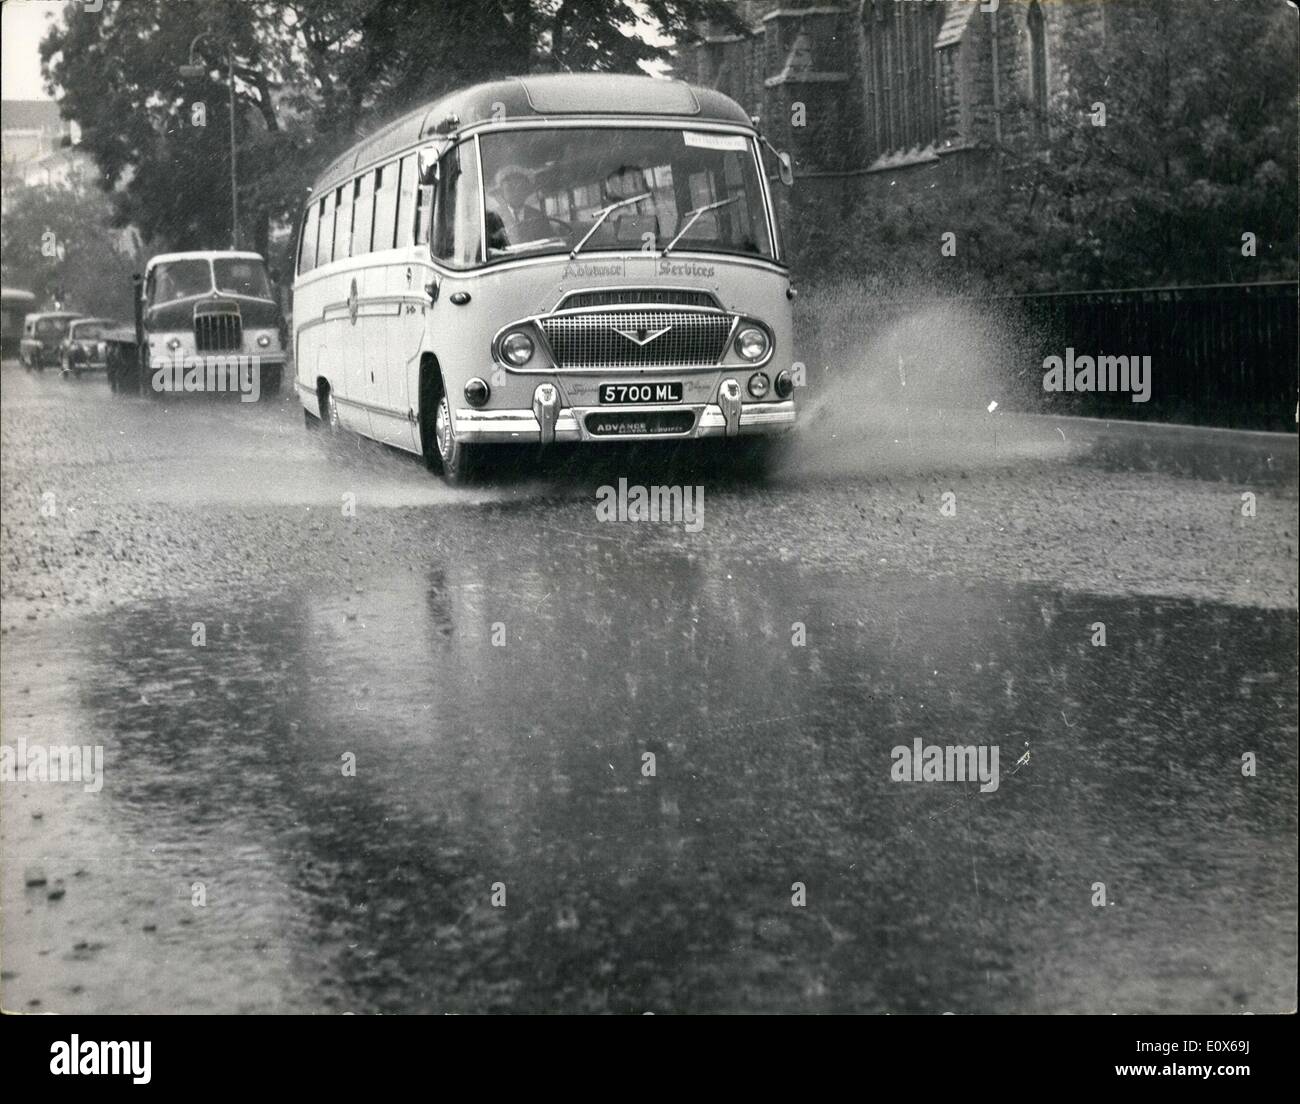 Juillet 07, 1965 - forte pluie à Londres : photo montre un coach charrues son chemin à travers une rue inondée pendant une pluie torrentielle d'aujourd'hui - à St John's Wood. Banque D'Images